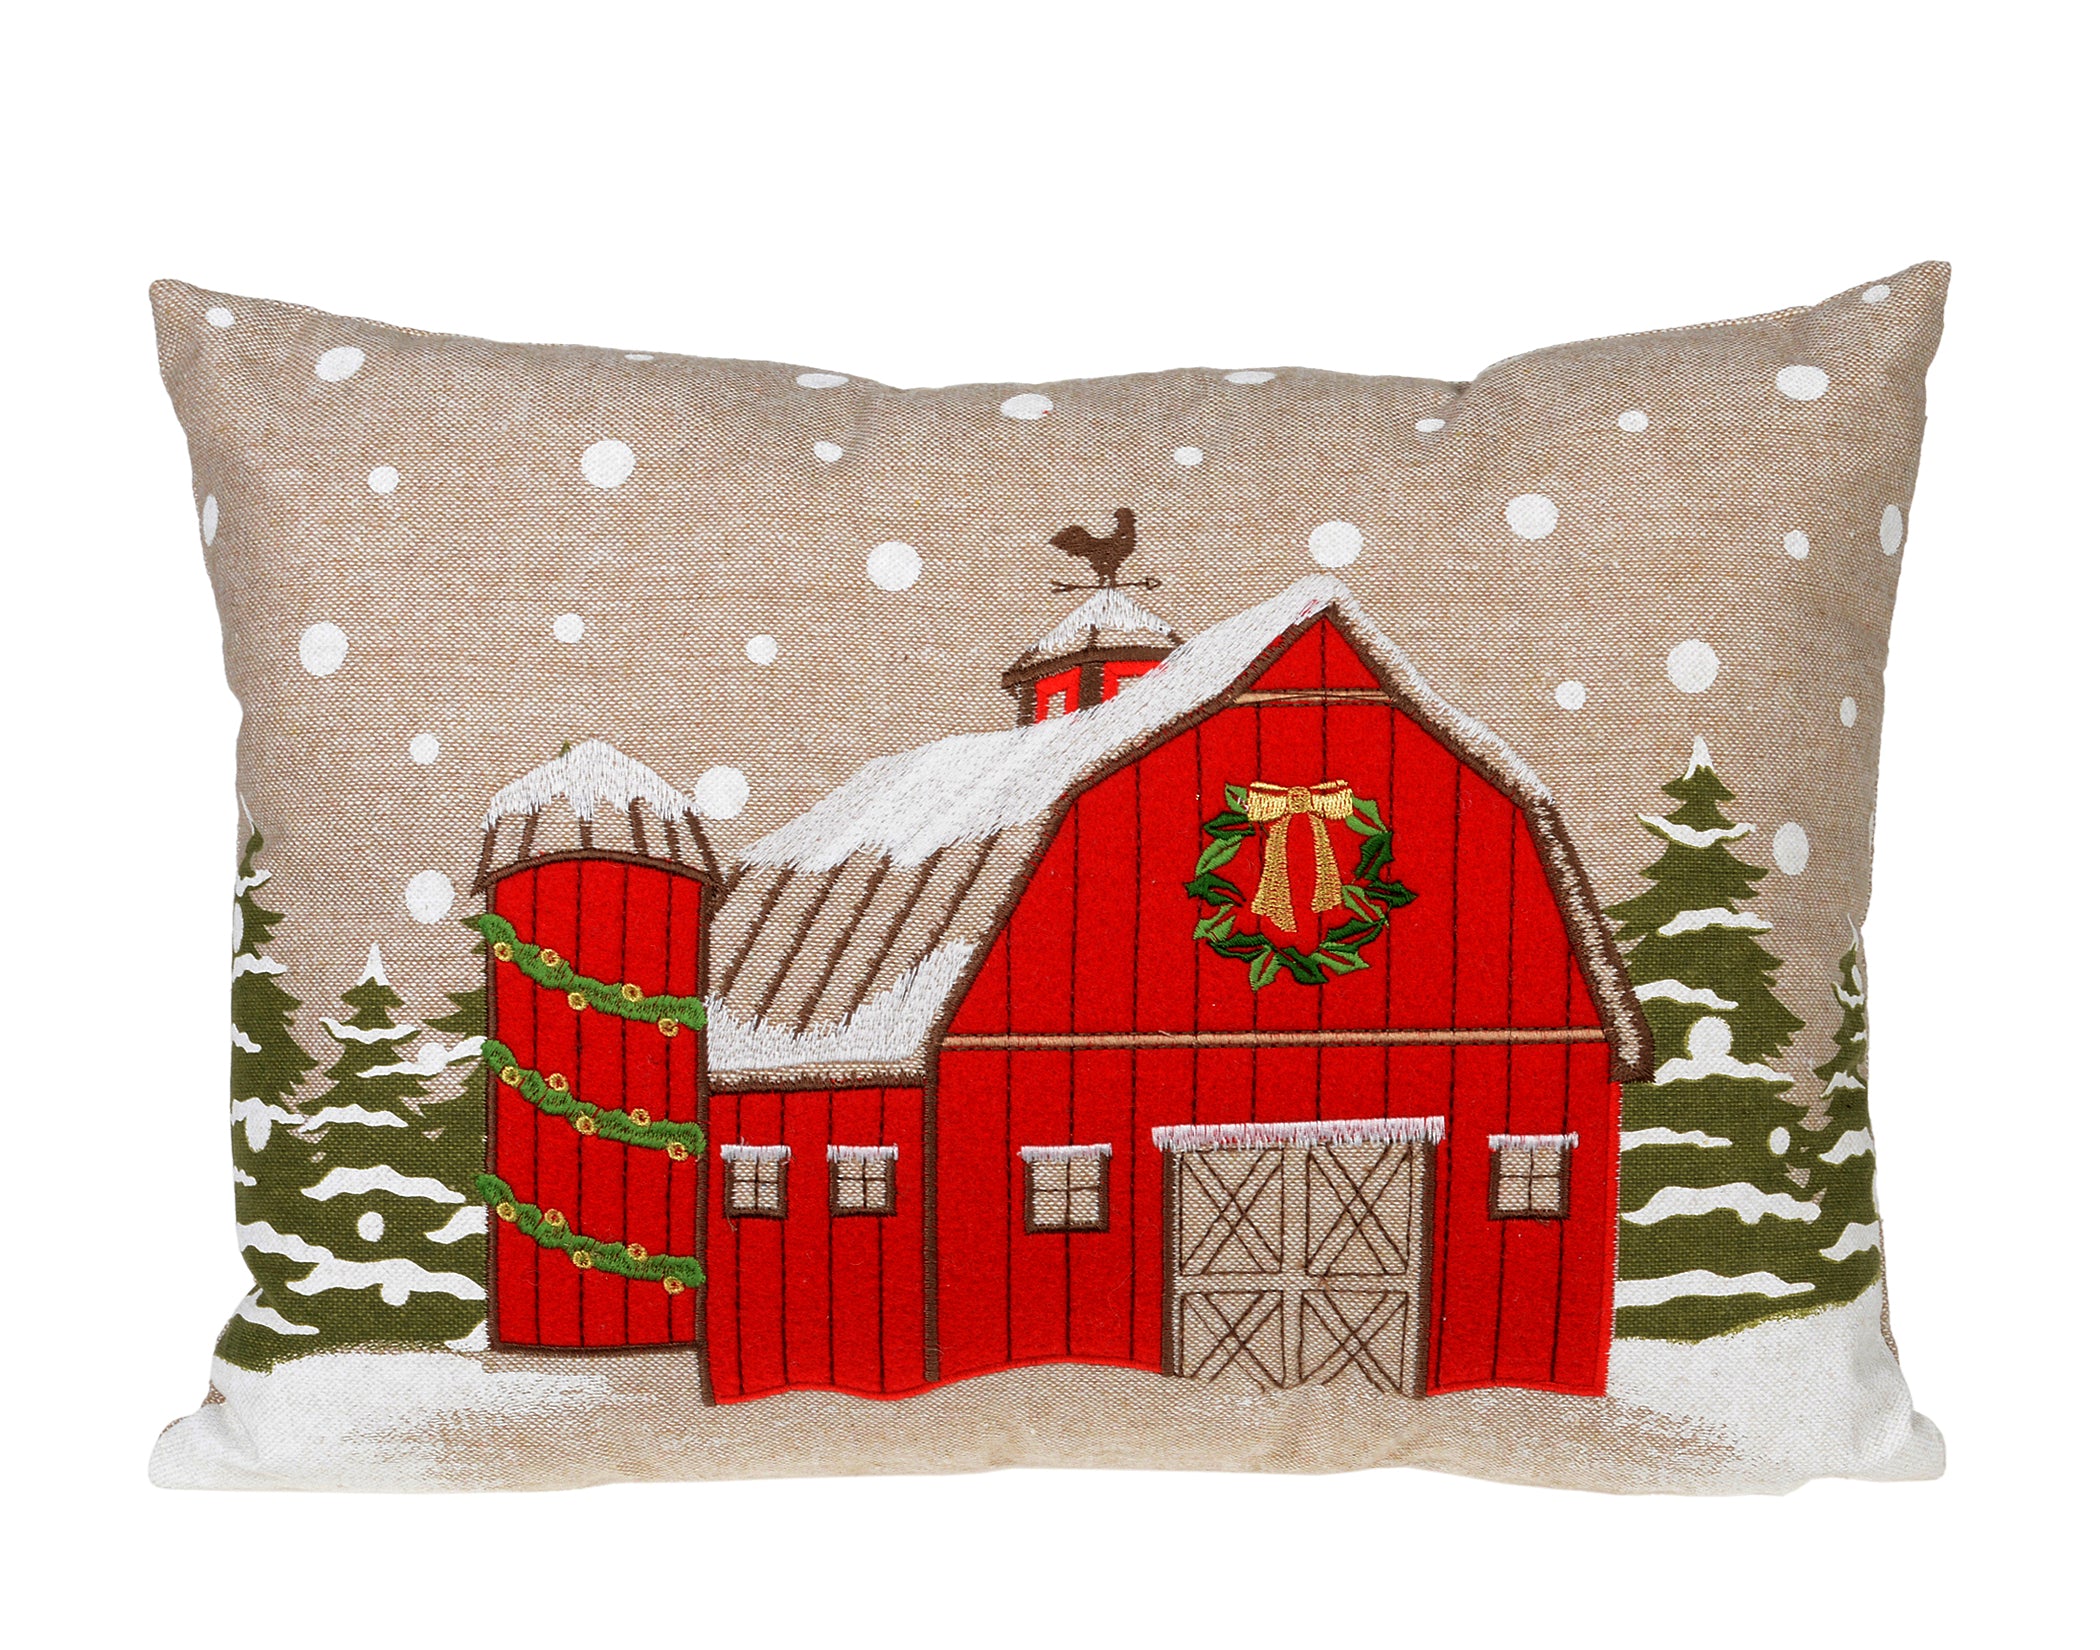 Red Christmas Barn Pillow